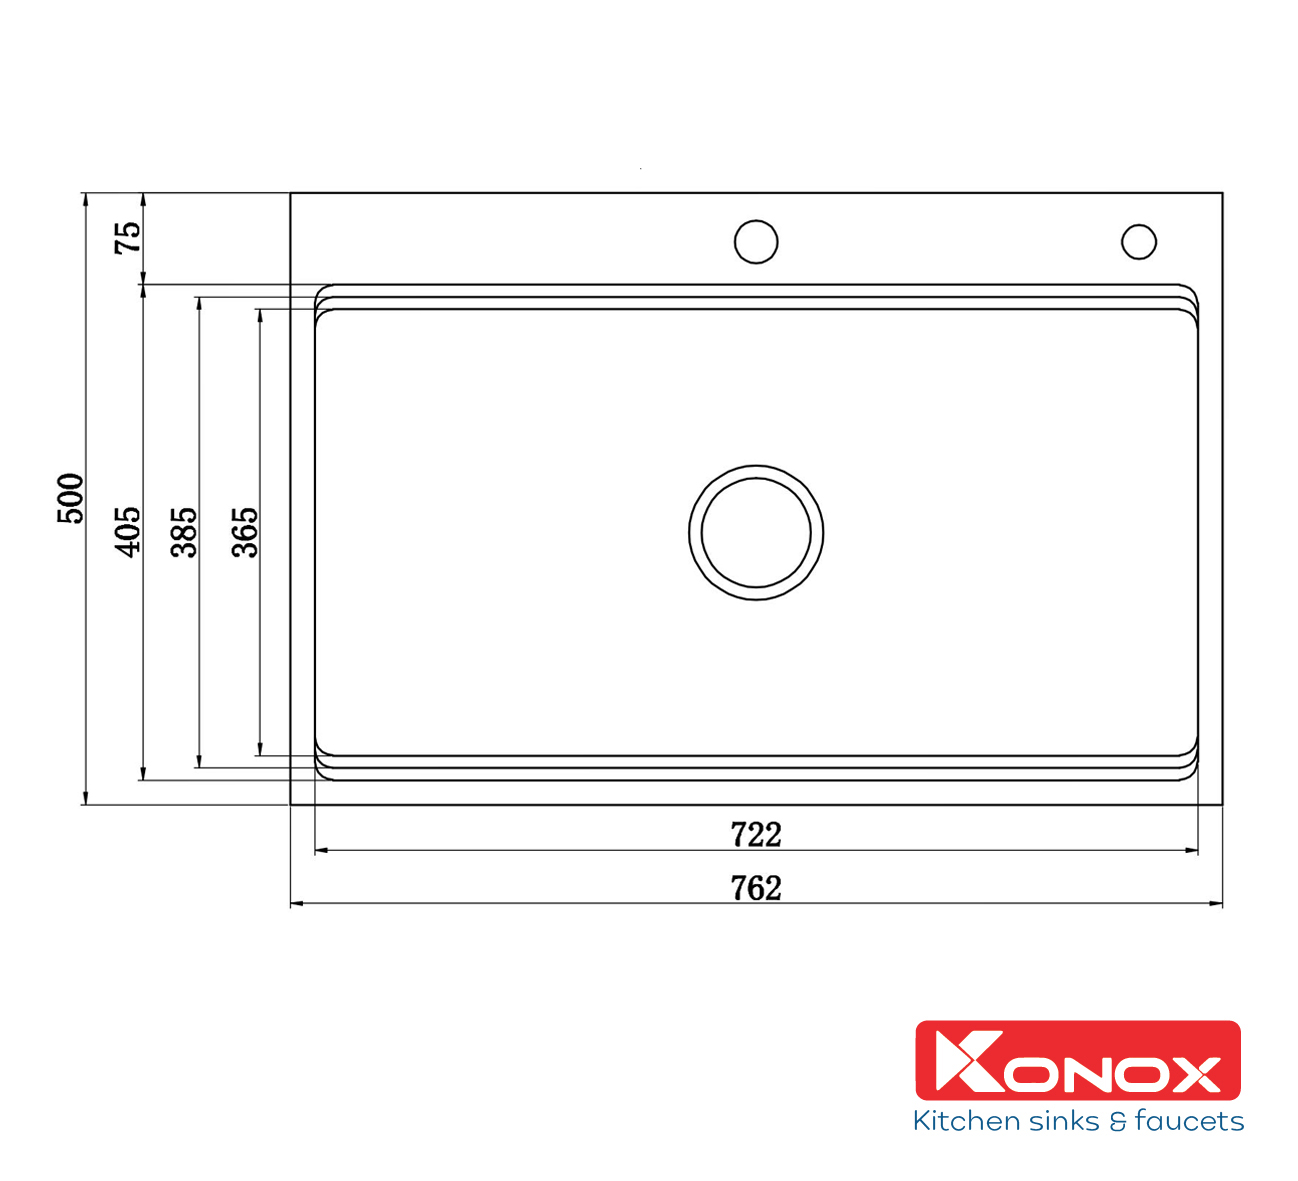 Chậu rửa bát Konox Workstation Sink – Topmount Sink KN7650TS